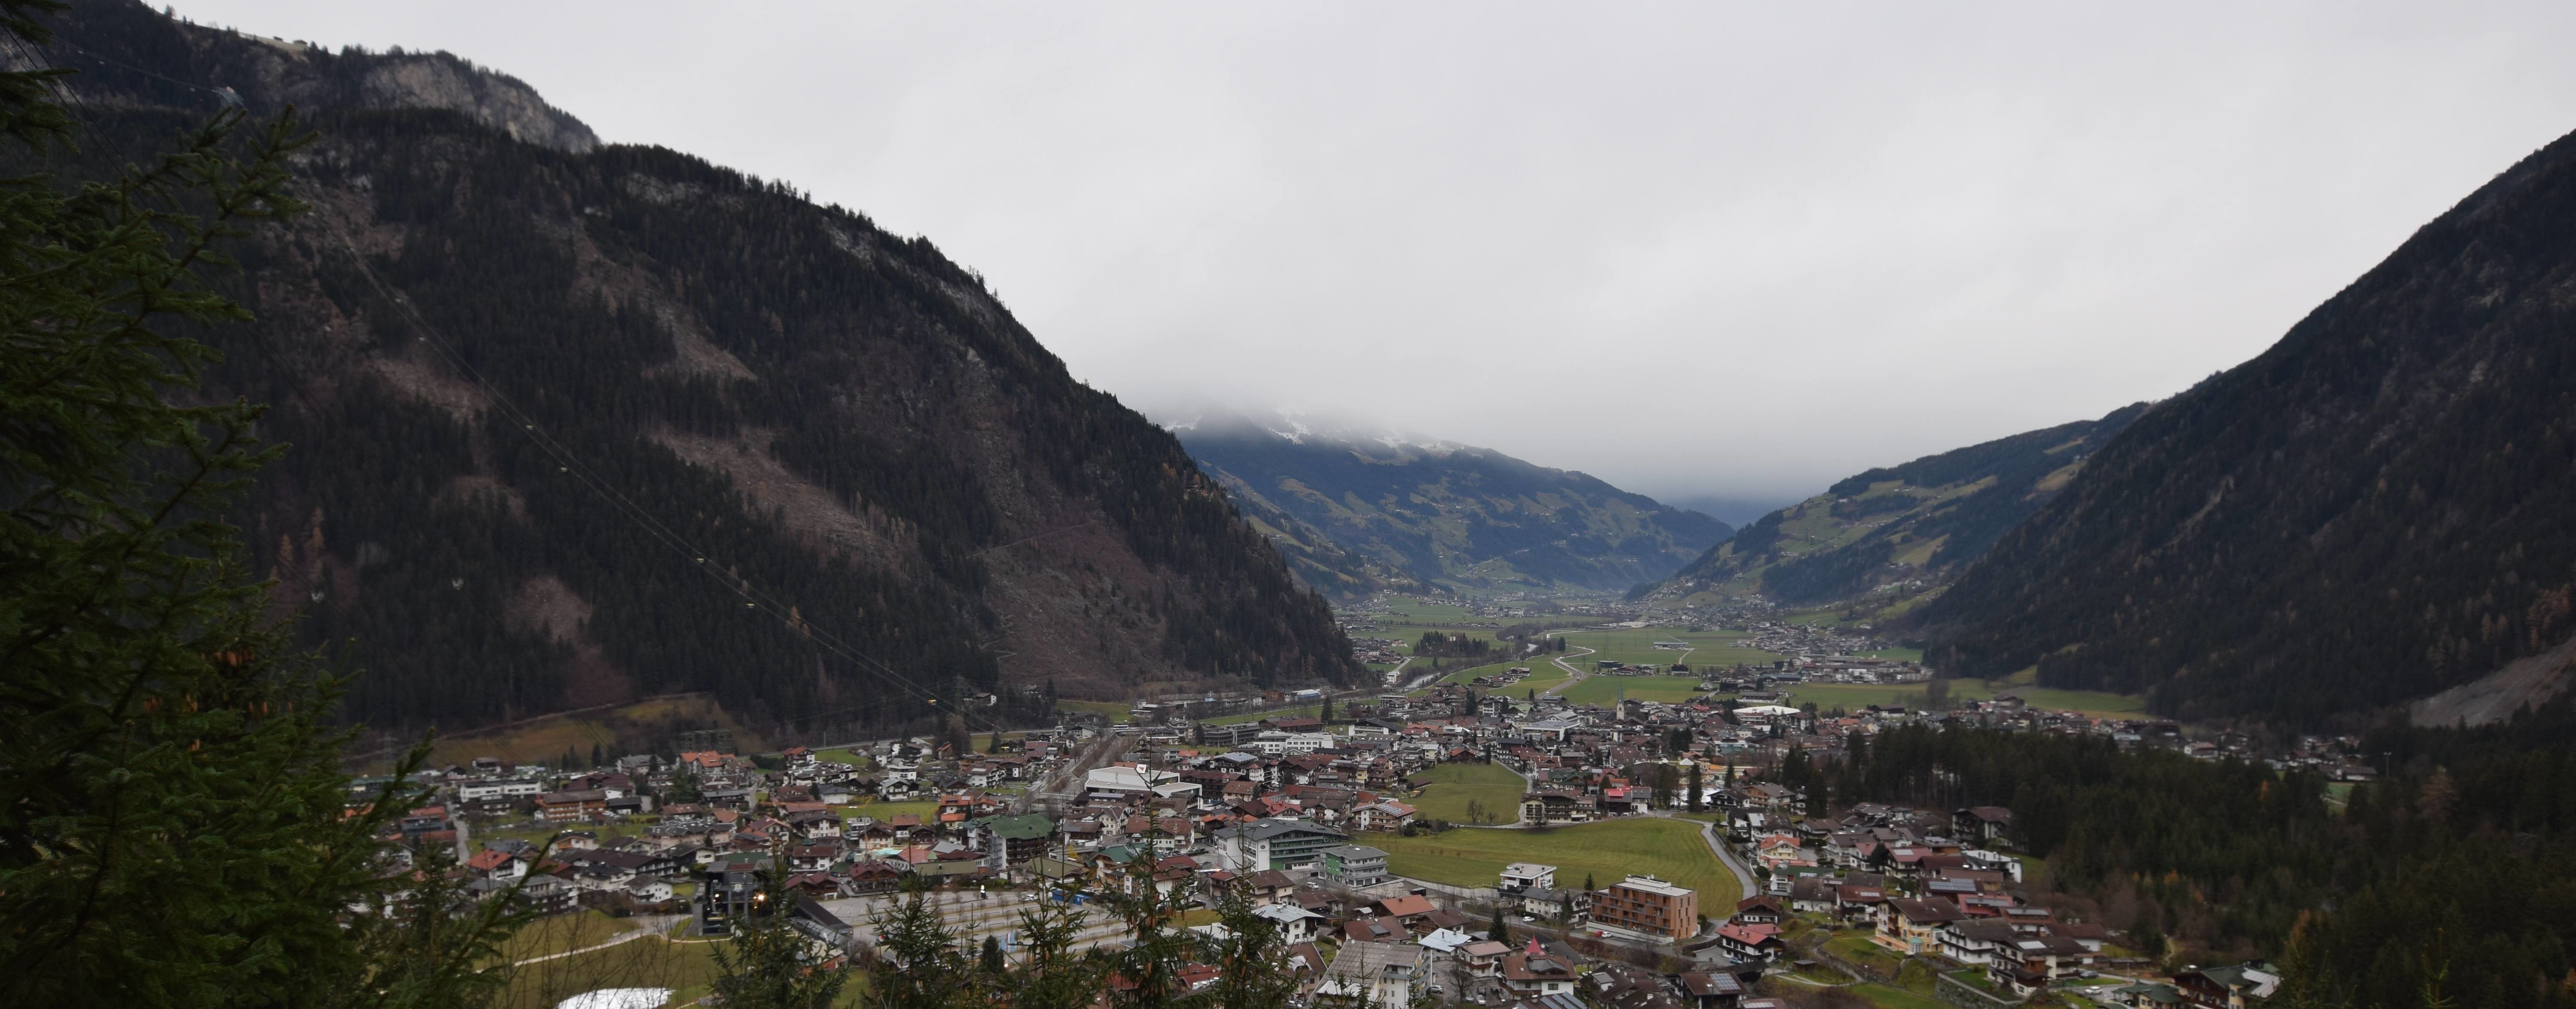 In het Zillertal lag de sneeuwgrens aanvankelijk op ongeveer 1500 meter.